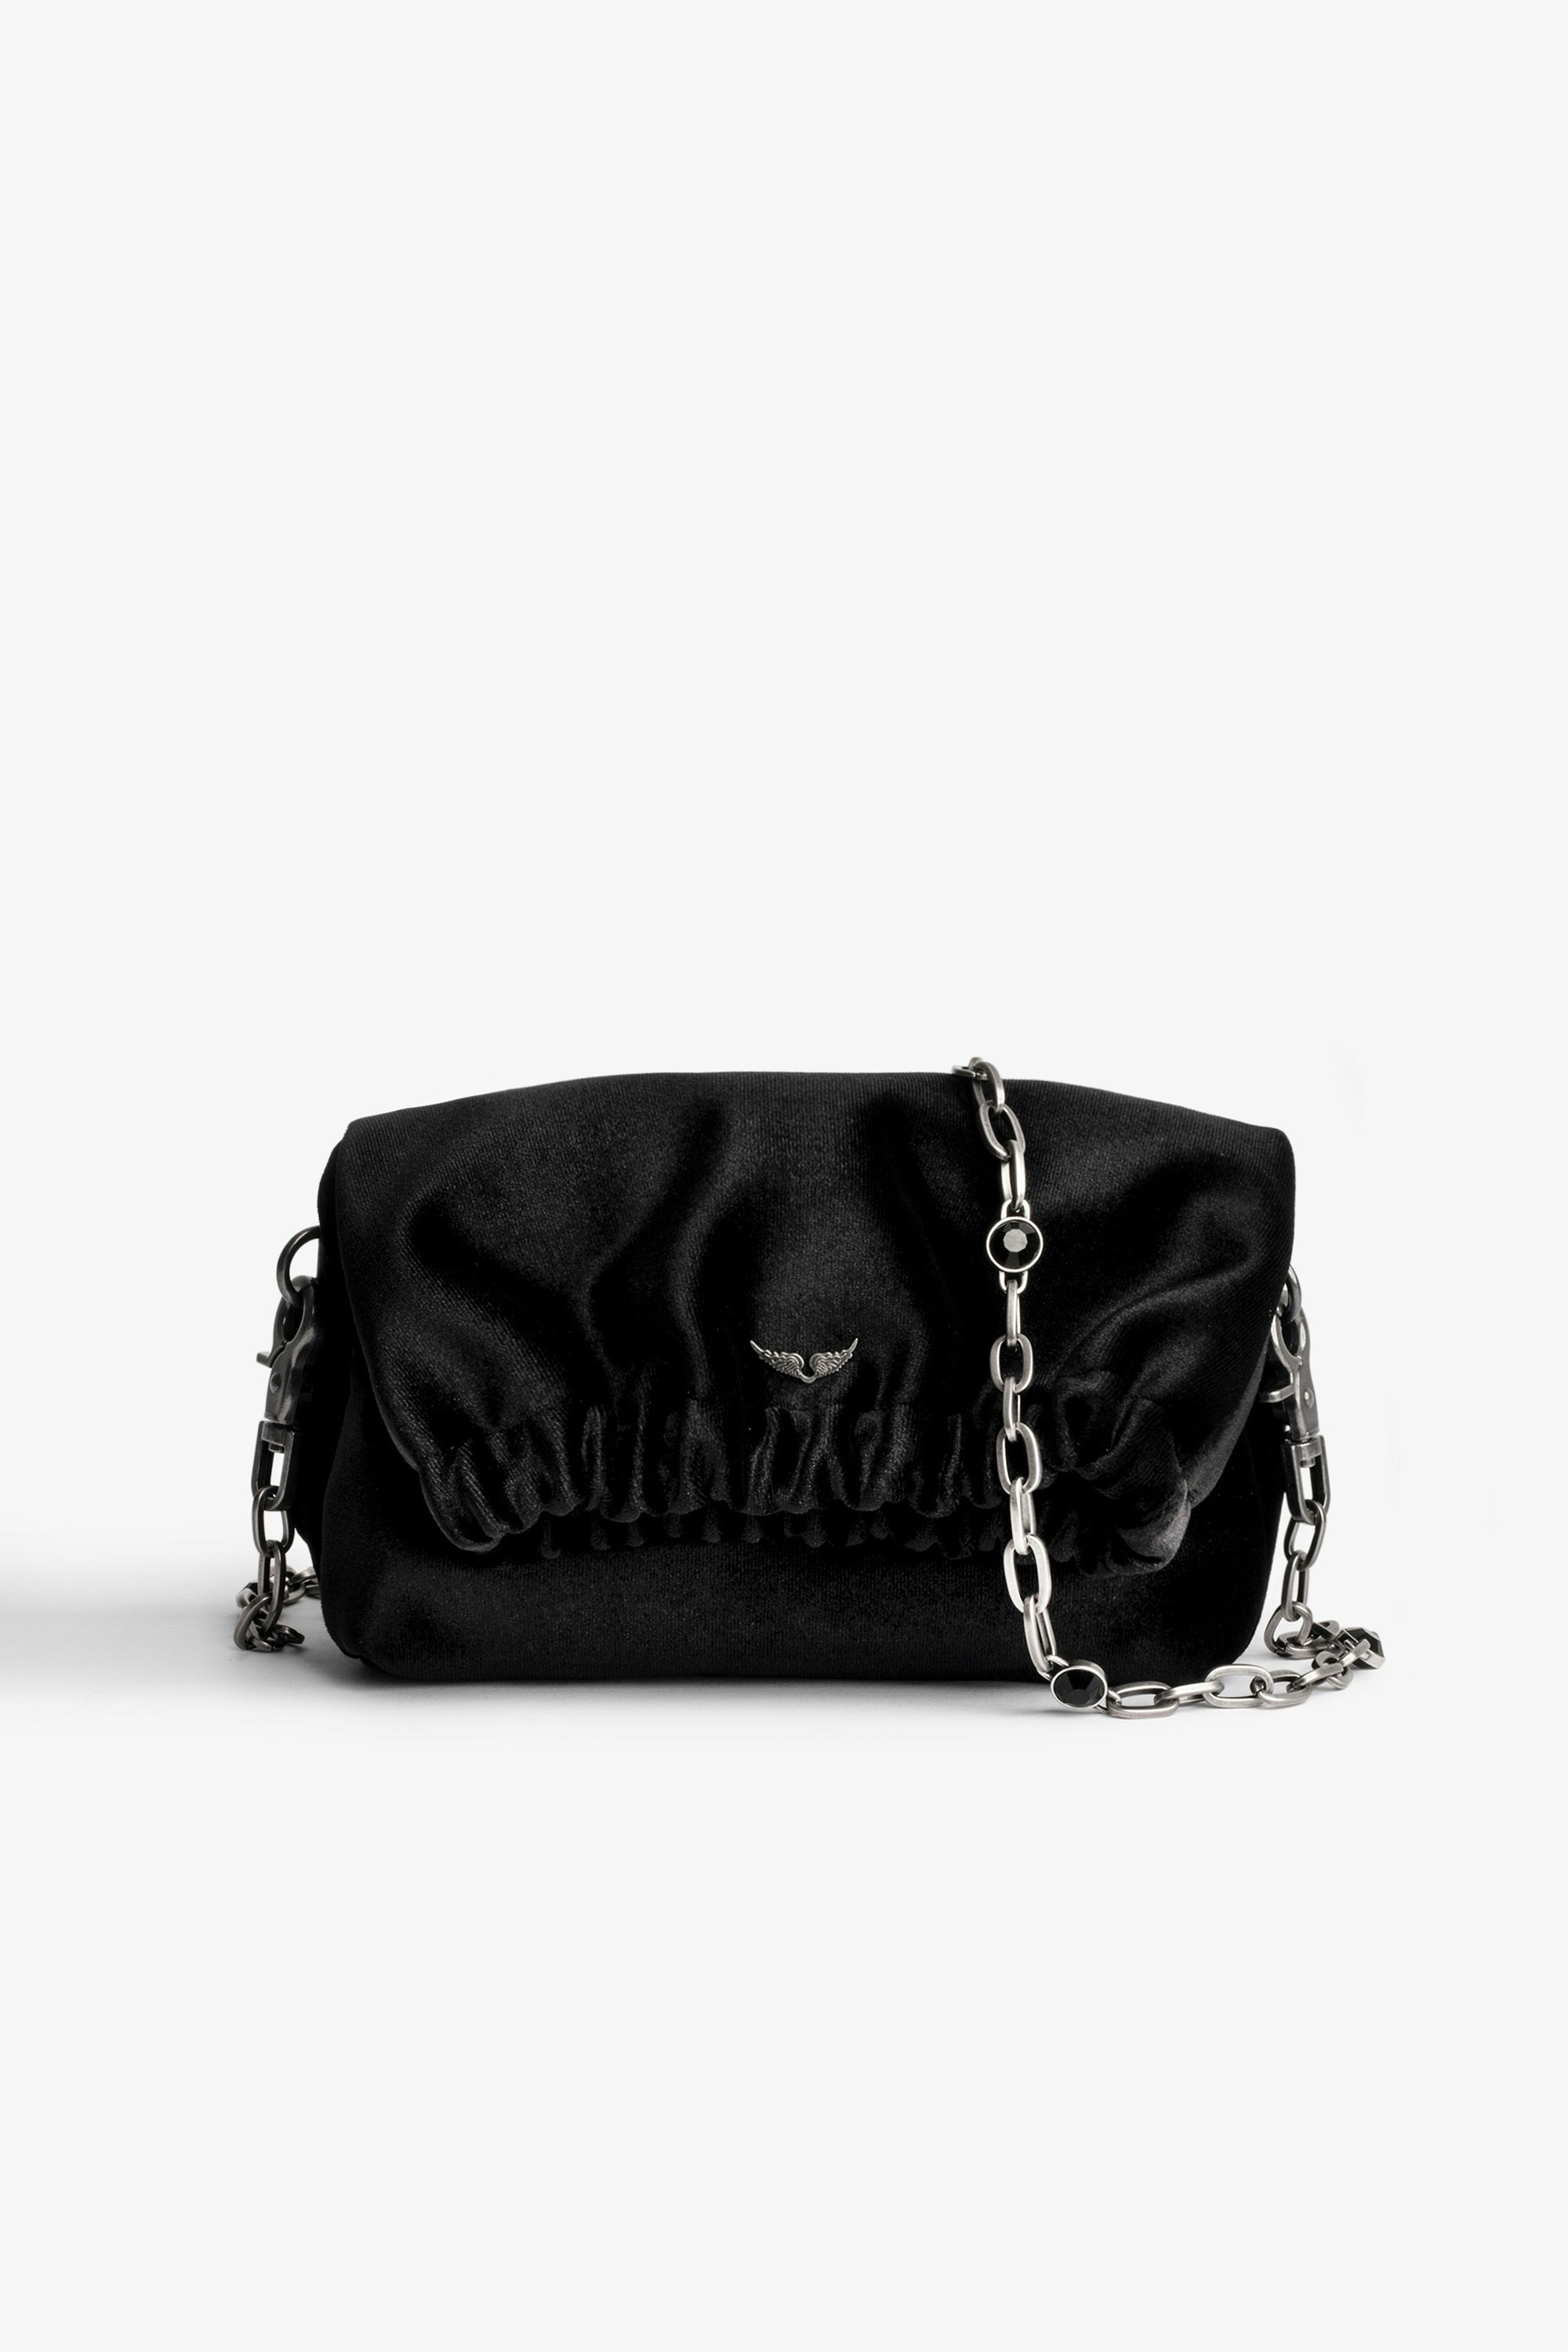 Rockyssime XS バッグ Women’s small black velvet bag